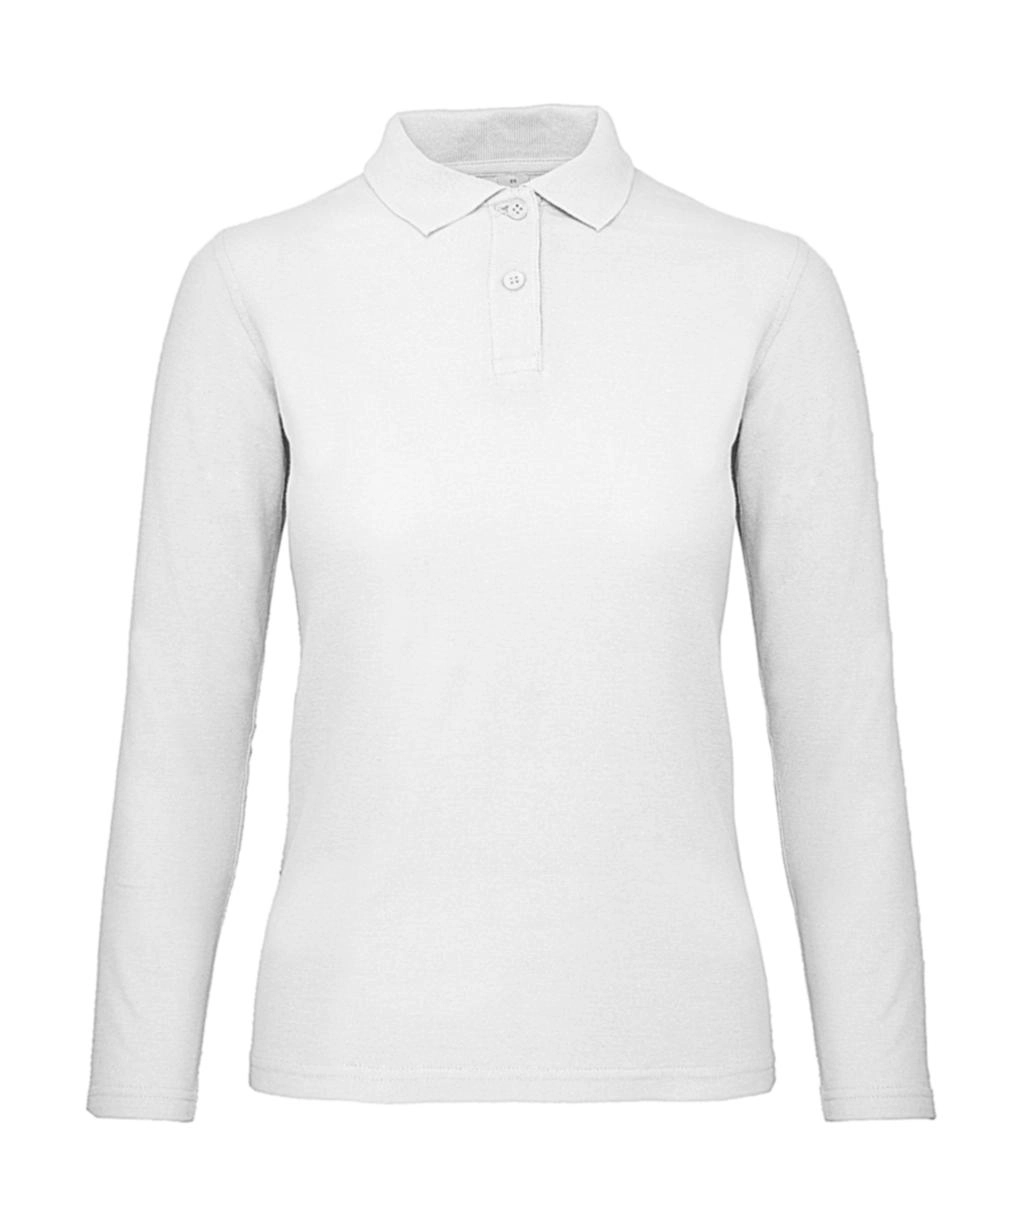 ID.001 LSL /women Polo zum Besticken und Bedrucken in der Farbe White mit Ihren Logo, Schriftzug oder Motiv.